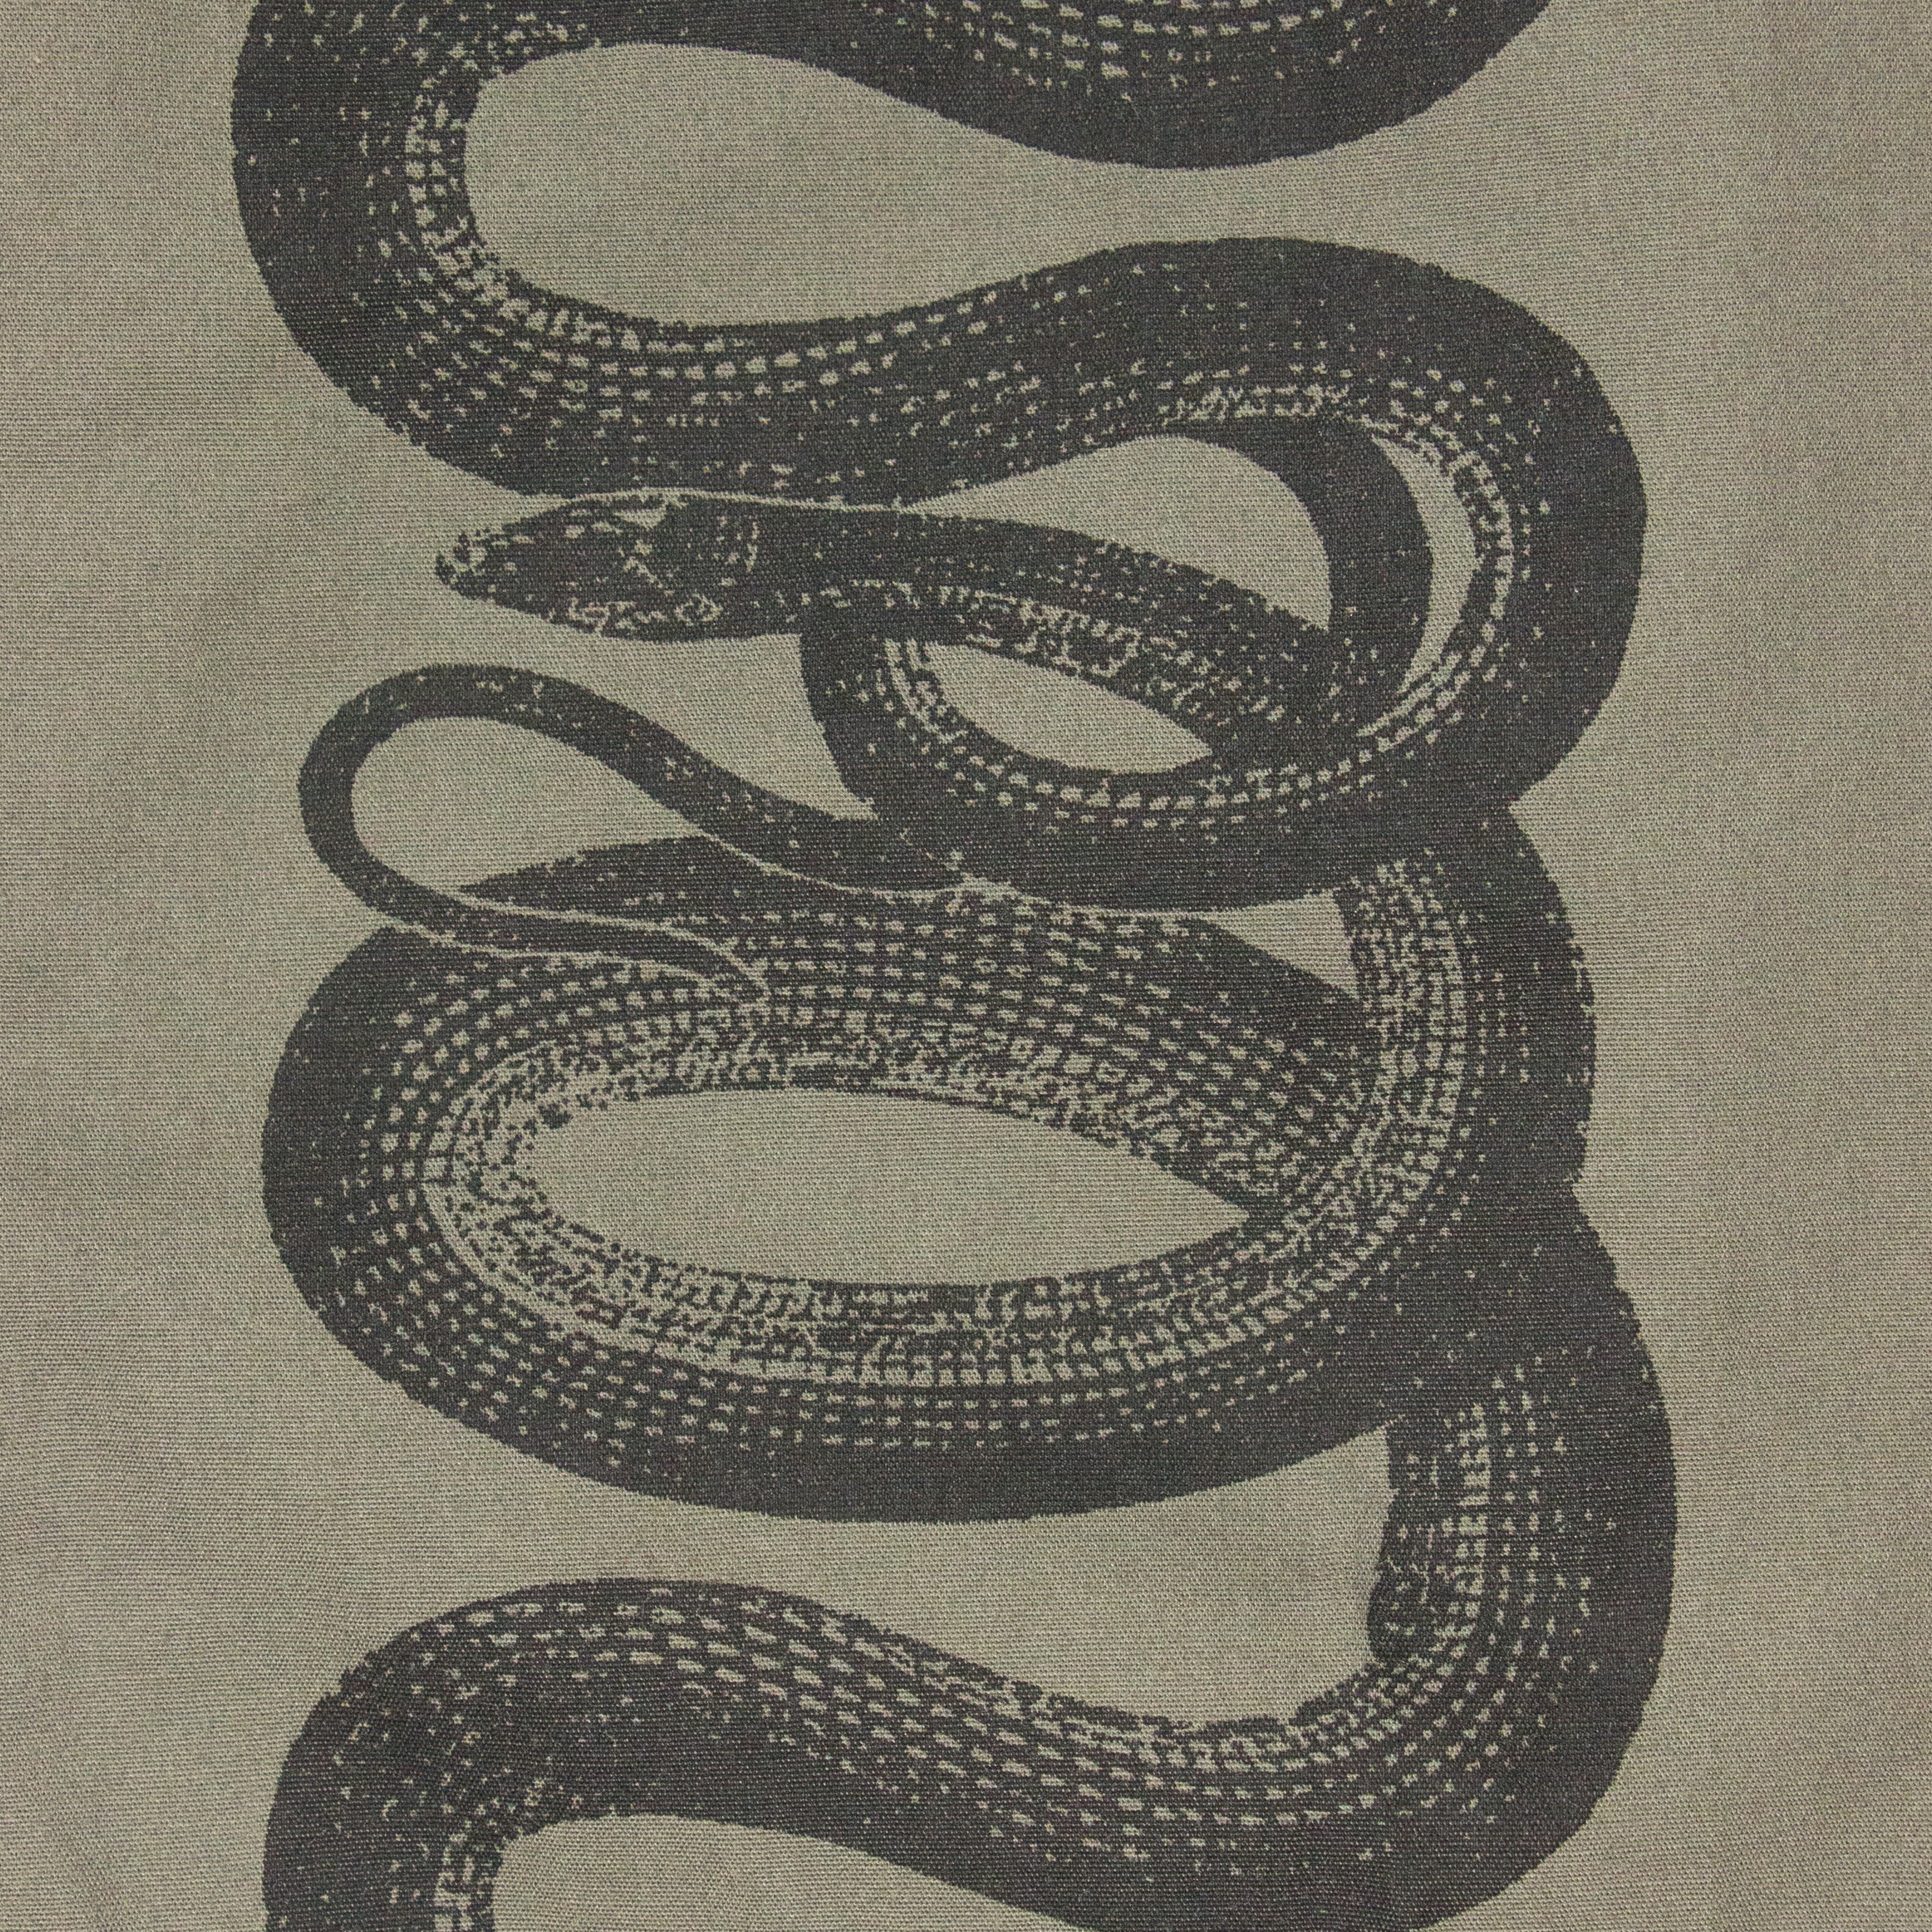 最初期 hysteric glamour snake design shirt-